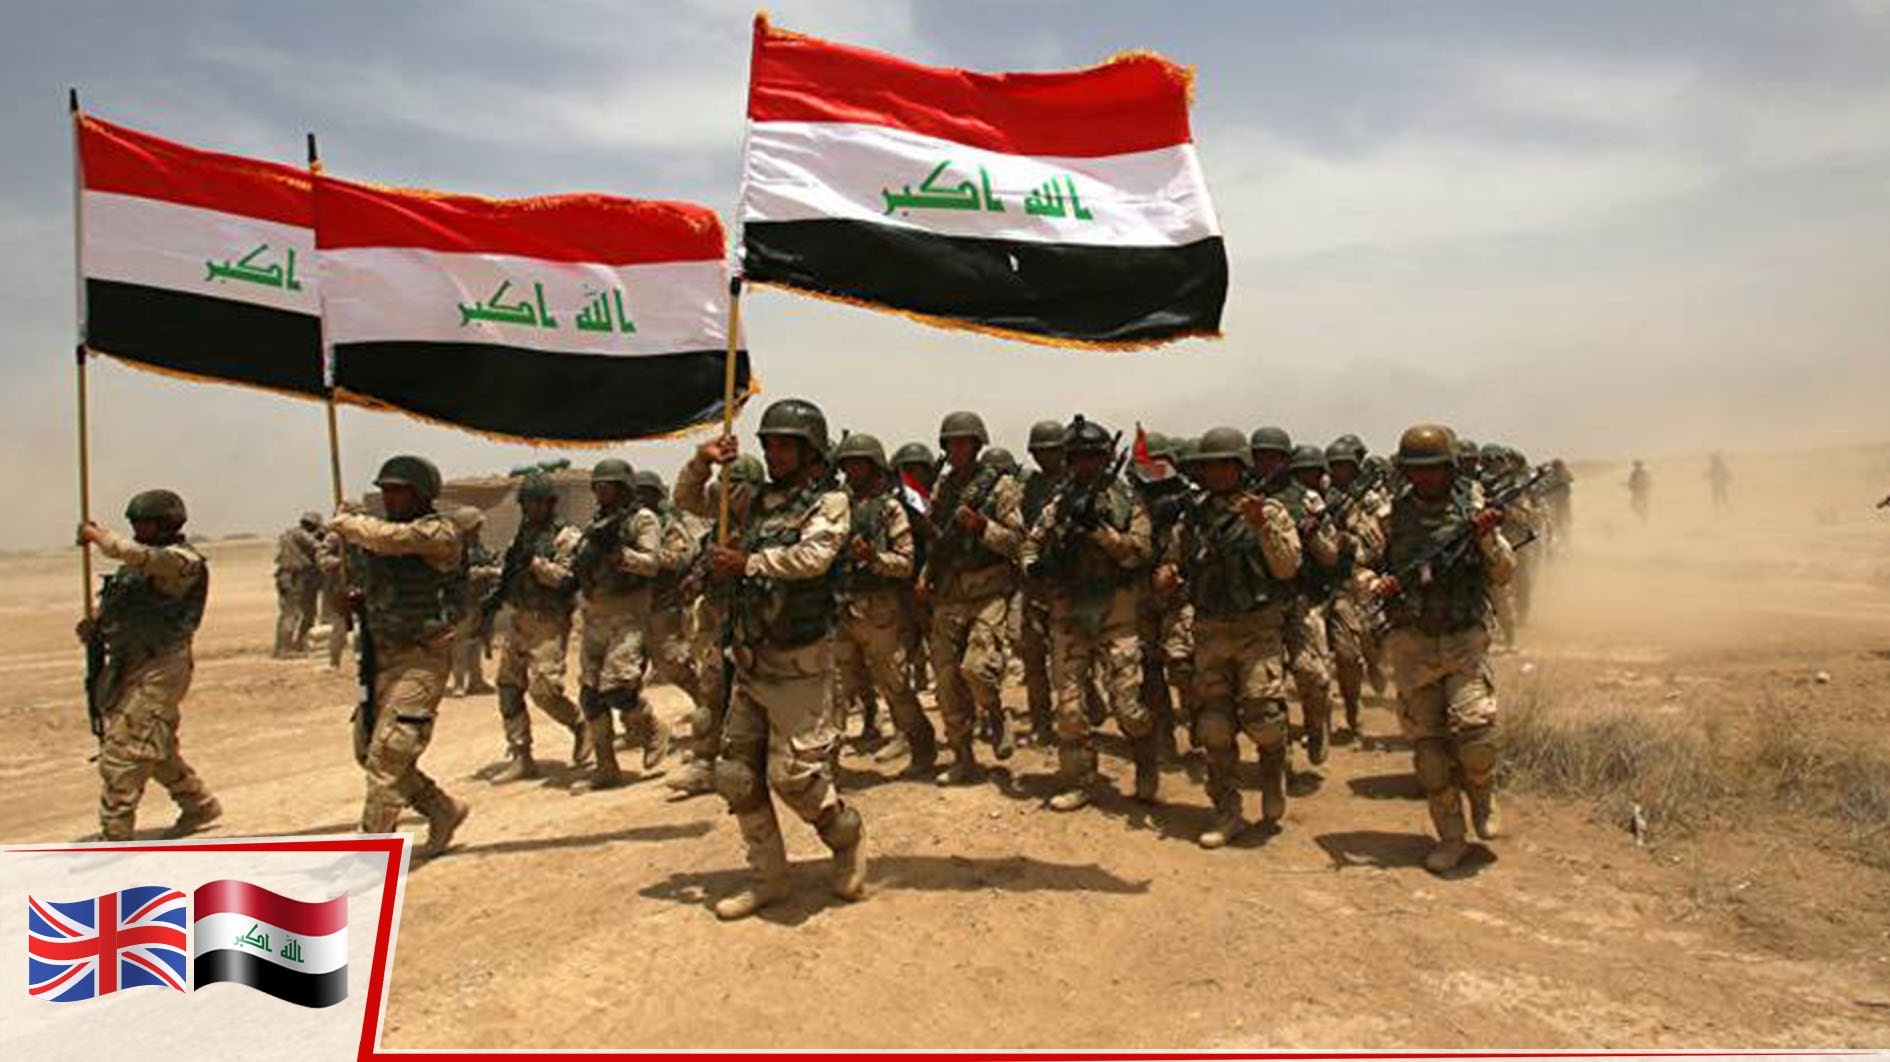 İngiltere ve Irak savunmada işbirliğine gidiyor